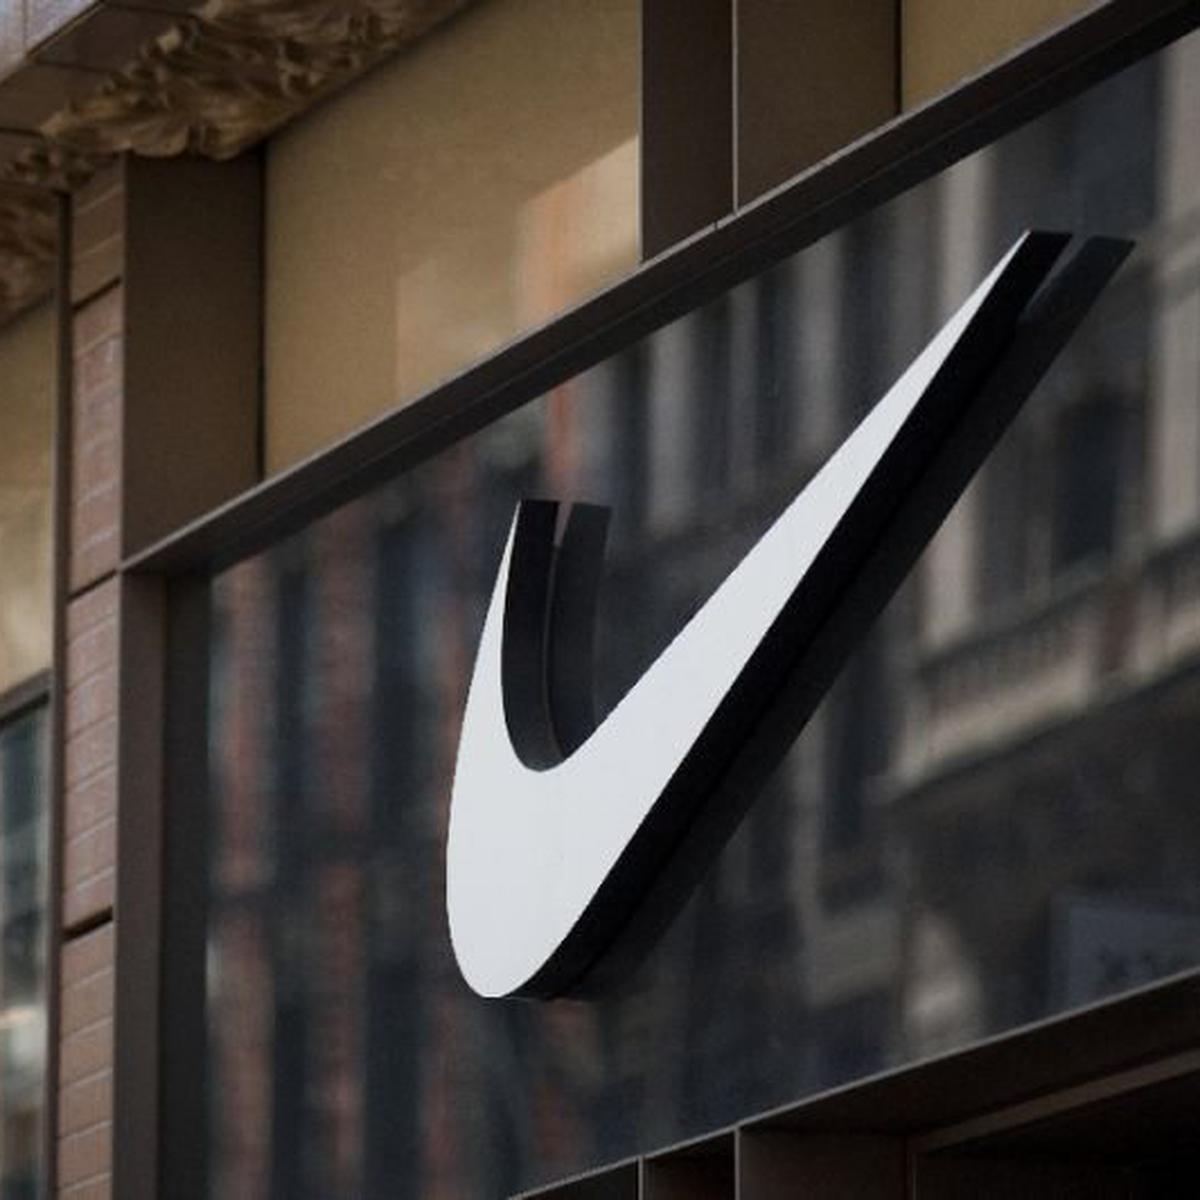 gratuitas de ejercicio de Nike son claves para estrategia de precios más altos | ECONOMIA |